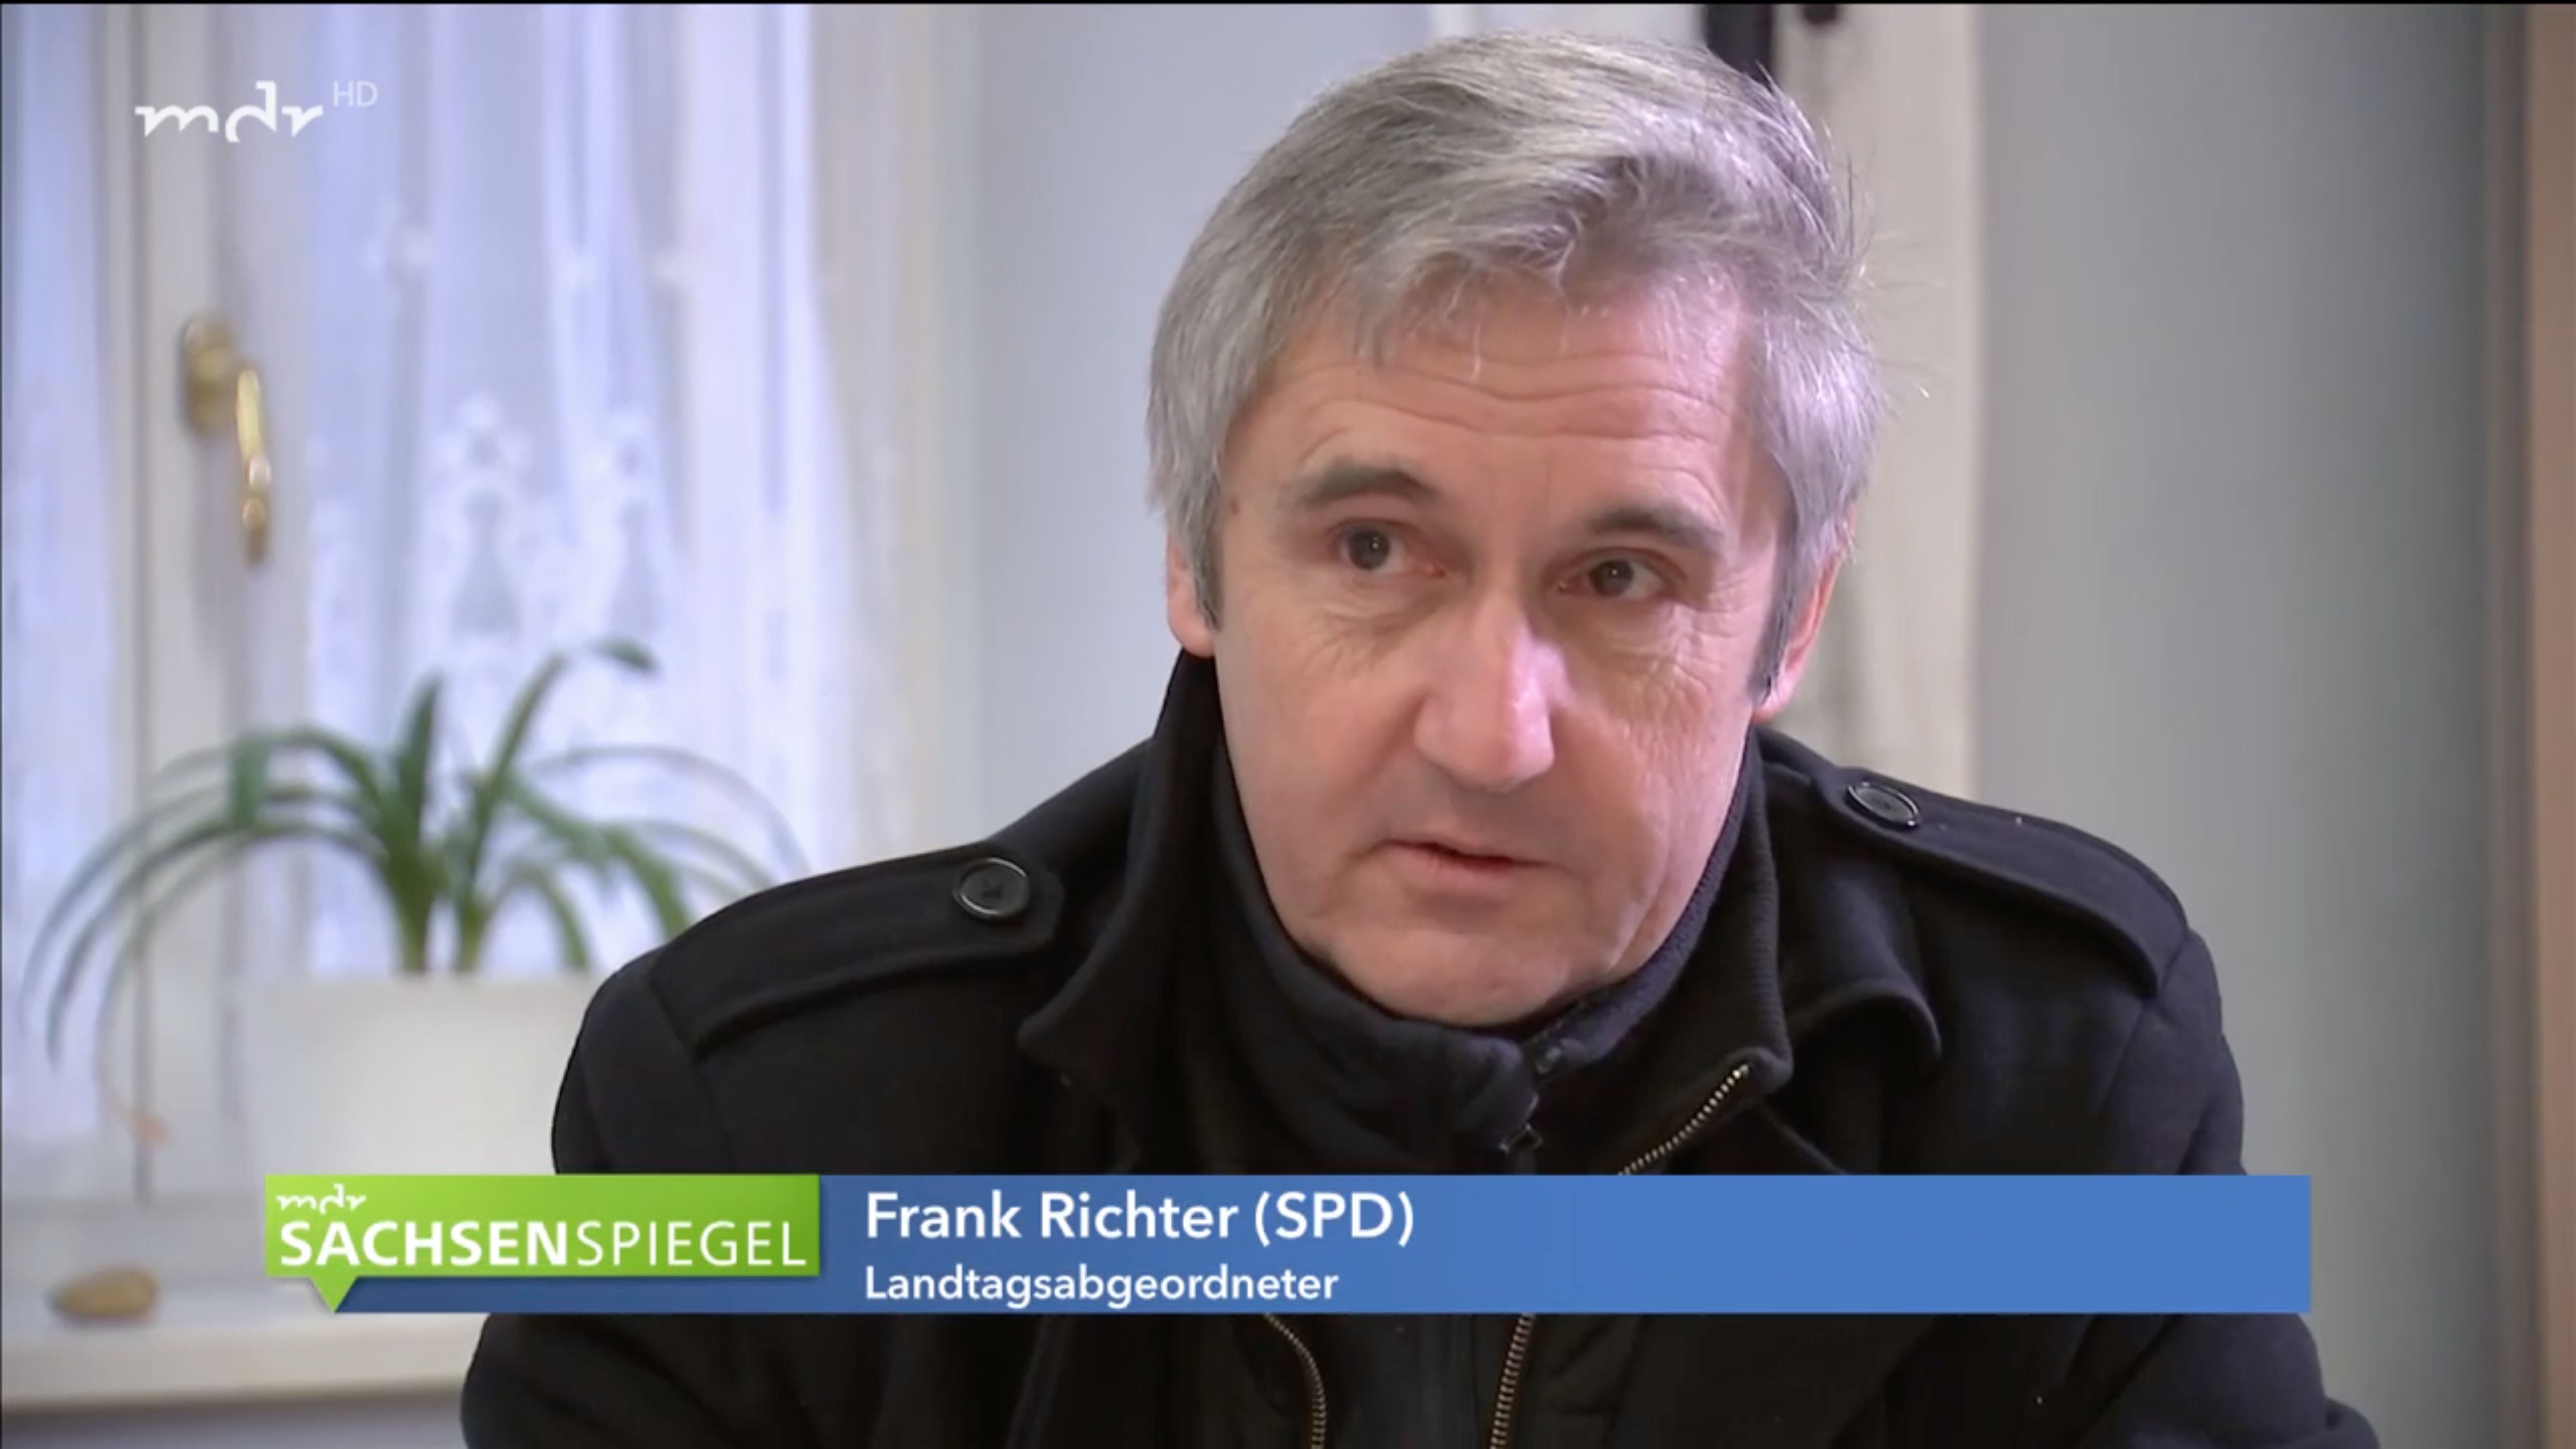 Frank Richter MDR